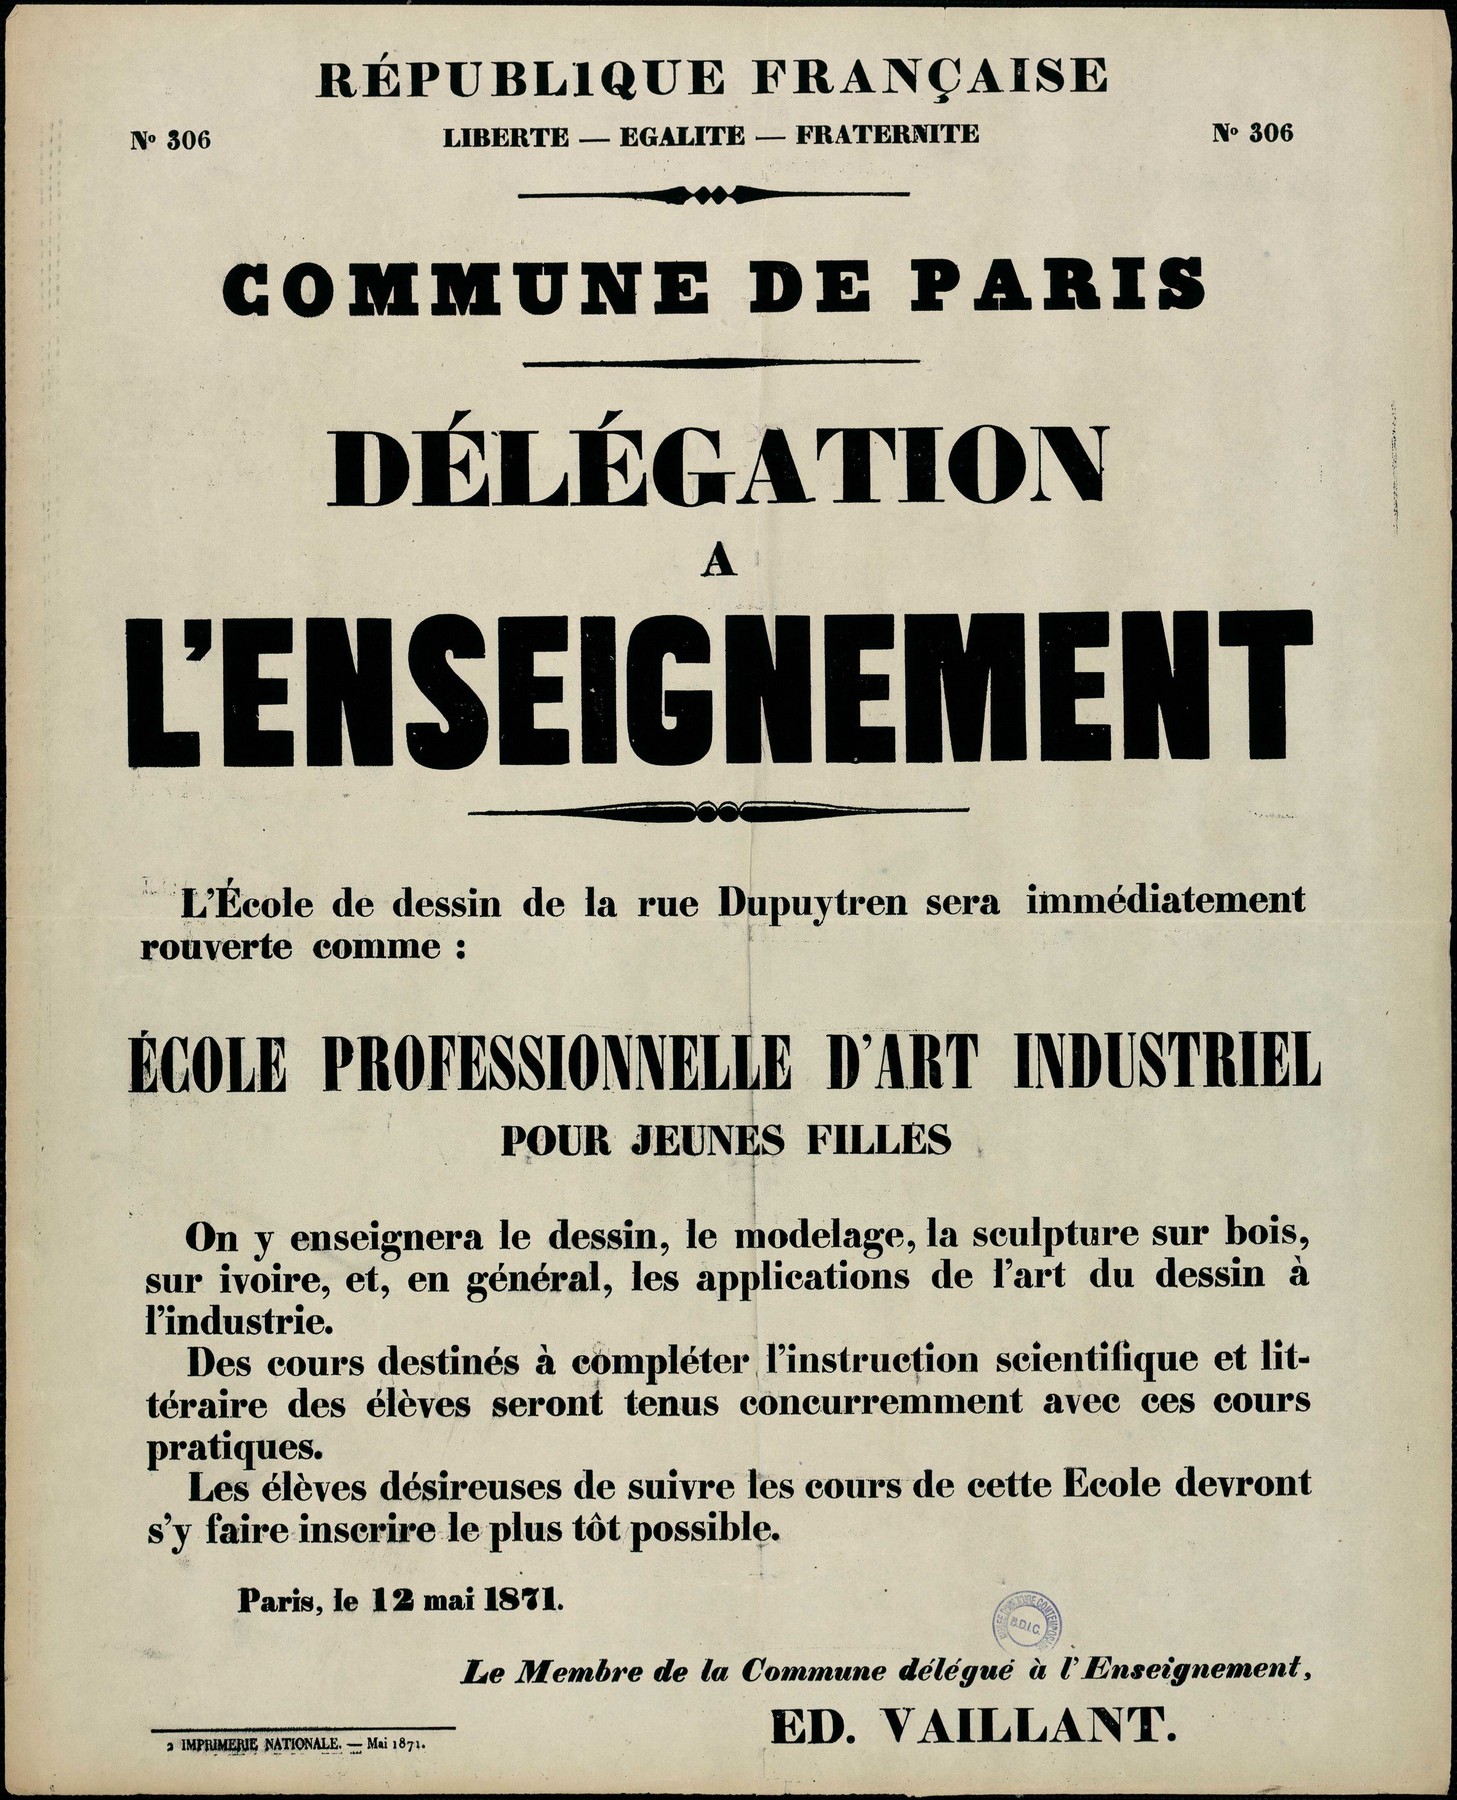 Affiche de la Commune de Paris N° 306 du 12 mai 1871 - Délégation Enseignement - Vaillant (source : La Contemporaine – Nanterre / argonnaute.parisnanterre.fr)